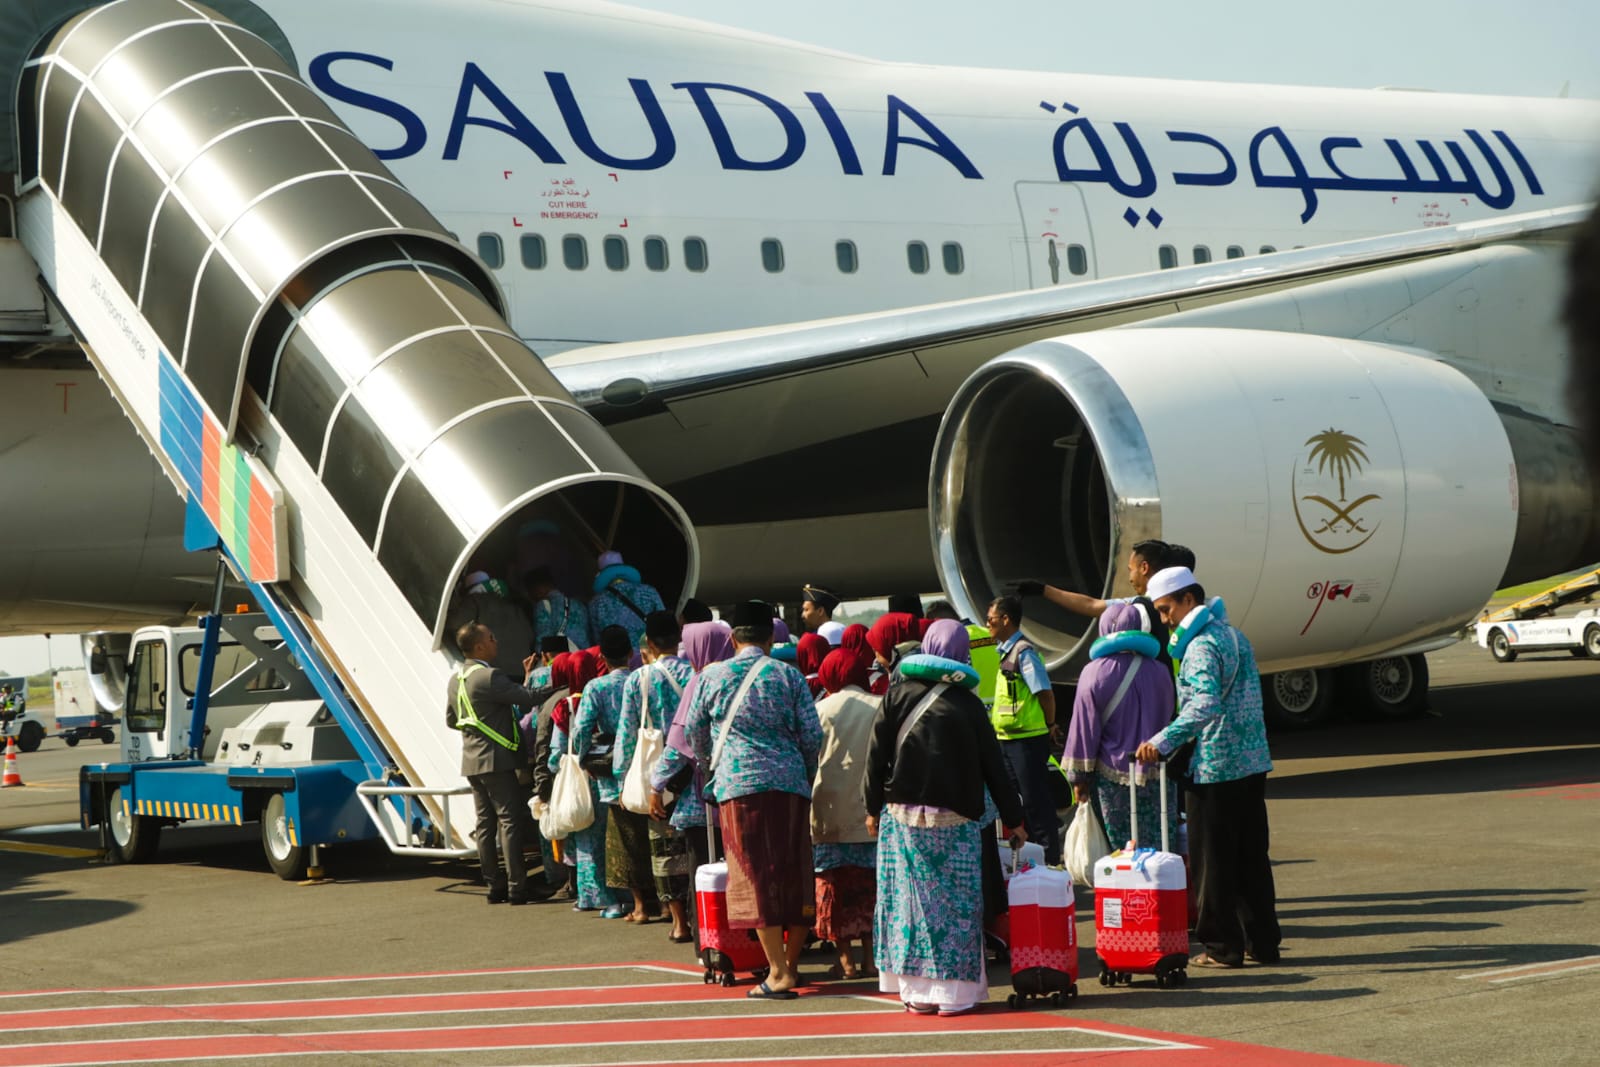 Kemenag RI Desak Otoritas Periksa Saudia Airlines, Soal Apa?